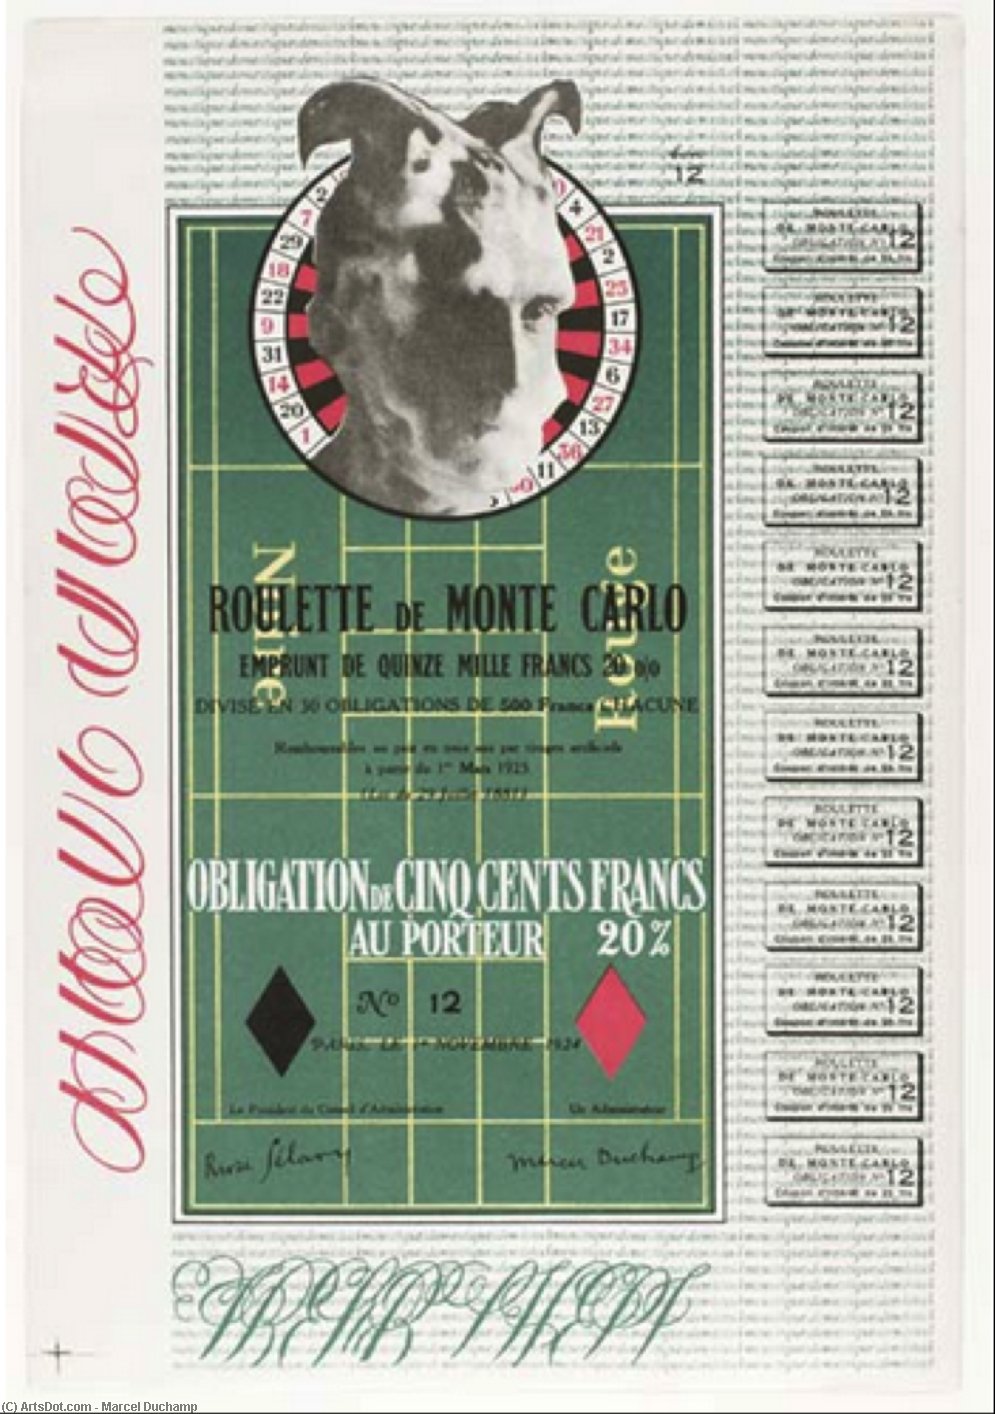 Wikioo.org - Bách khoa toàn thư về mỹ thuật - Vẽ tranh, Tác phẩm nghệ thuật Marcel Duchamp - Obligation Montecarlo - Monte Carlo Bond